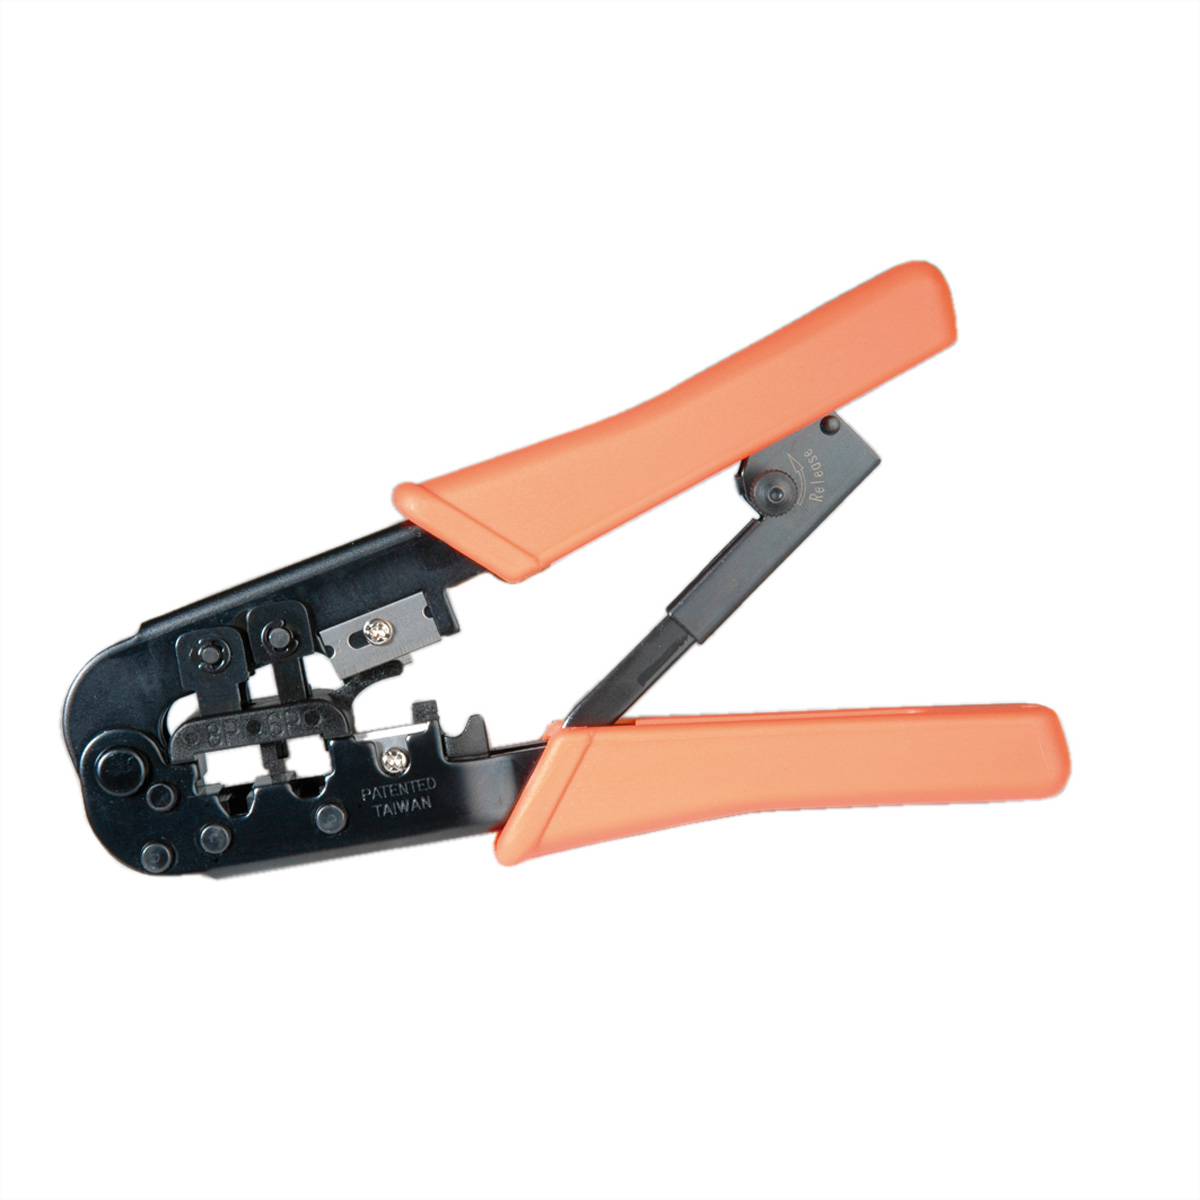 VALUE Crimpzange Modular für Crimpzange, orange Stecker